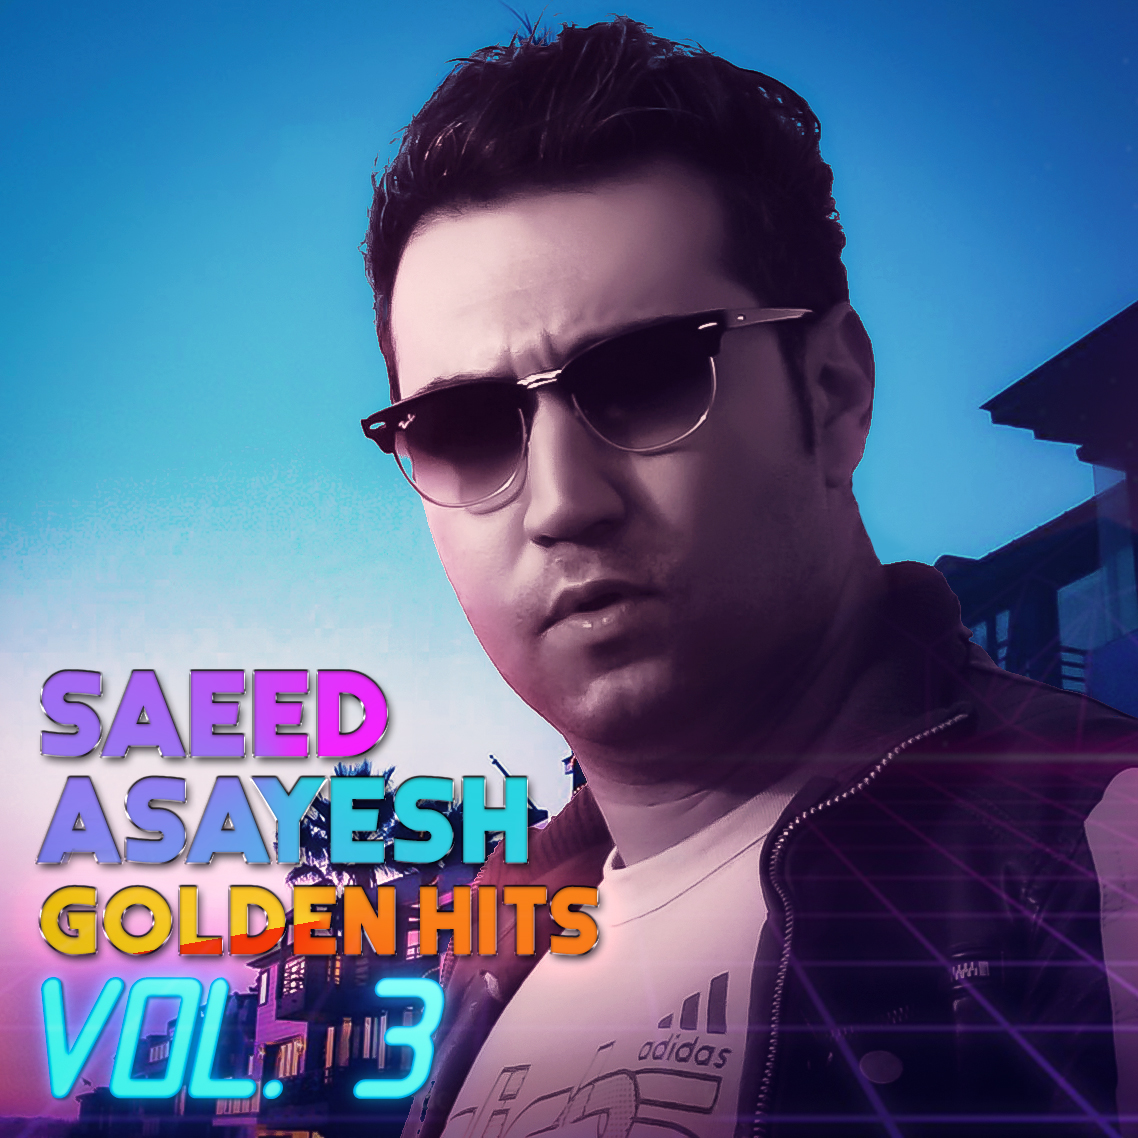  دانلود آهنگ جدید سعید آسایش - آسمونم تاره | Download New Music By Saeed Asayesh - Asemonam Tare